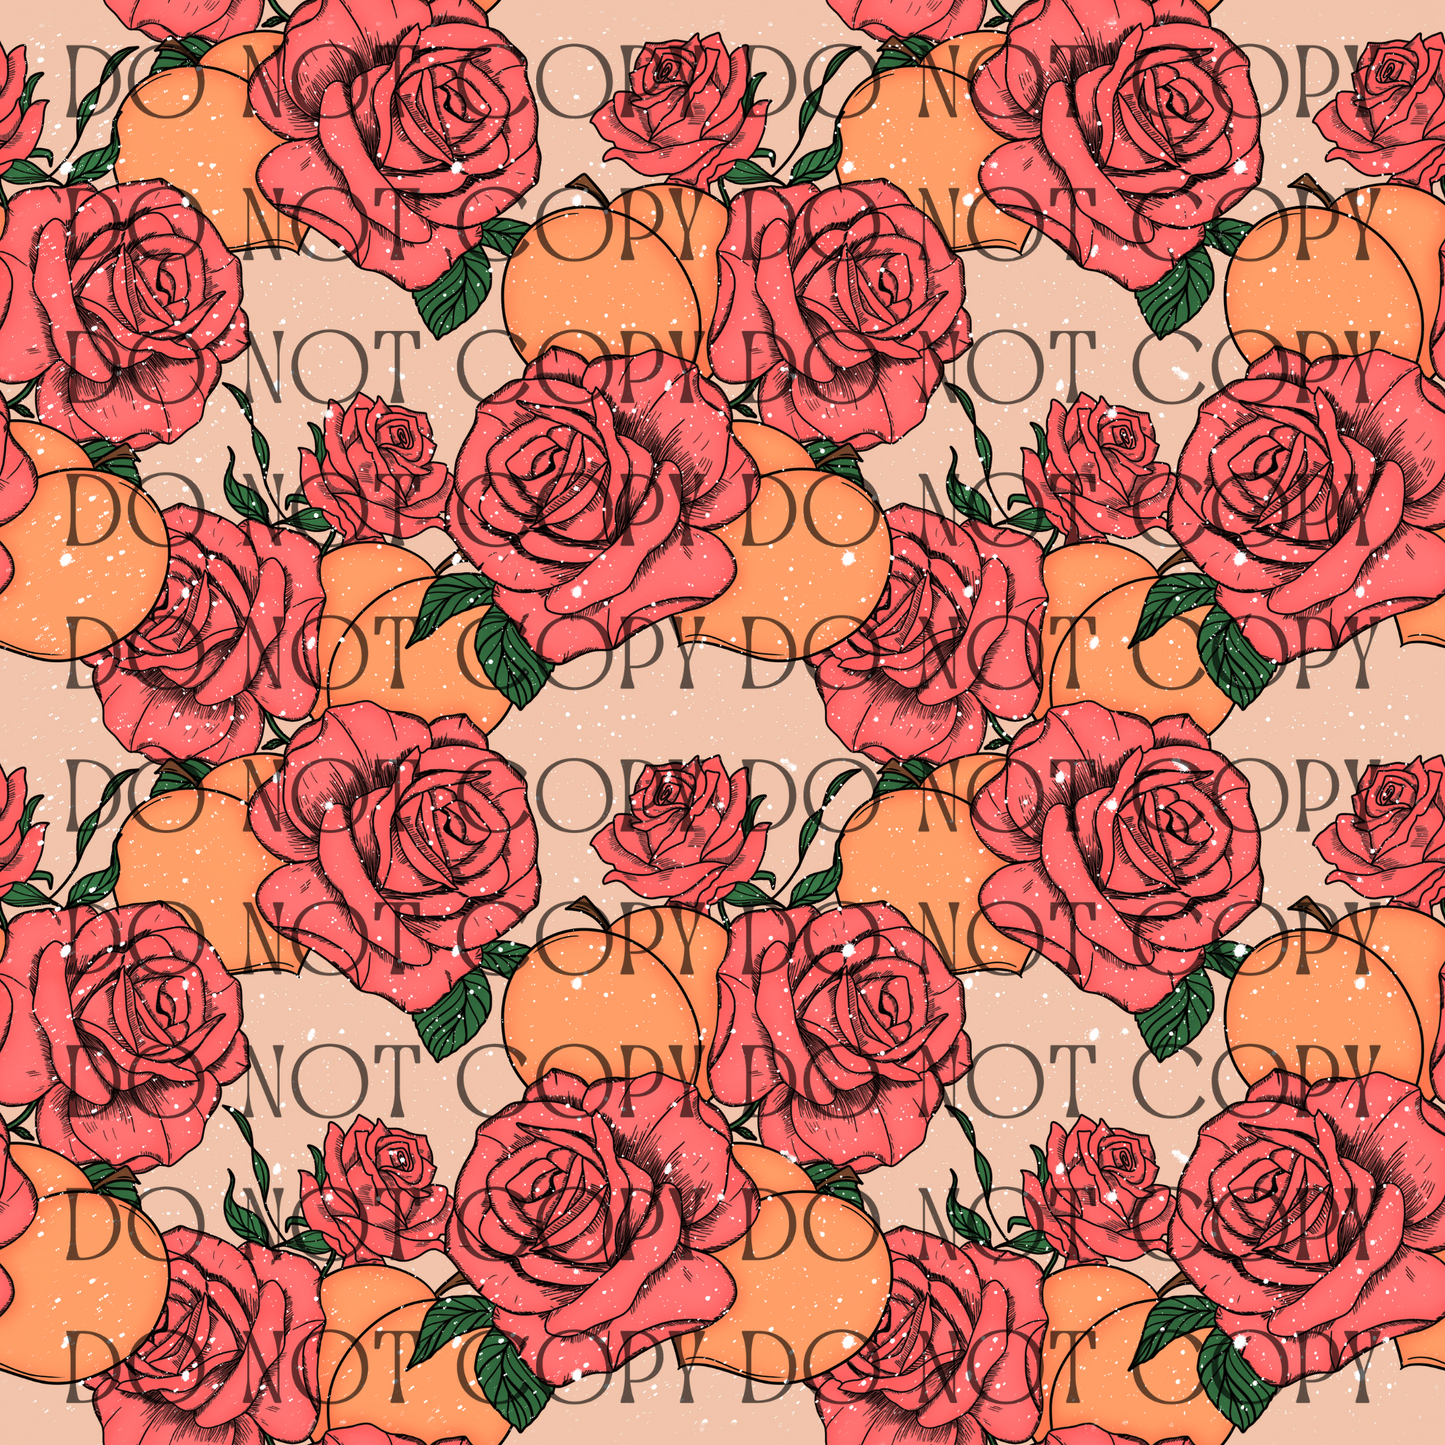 Peachy Roses - Opaque Vinyl Sheet